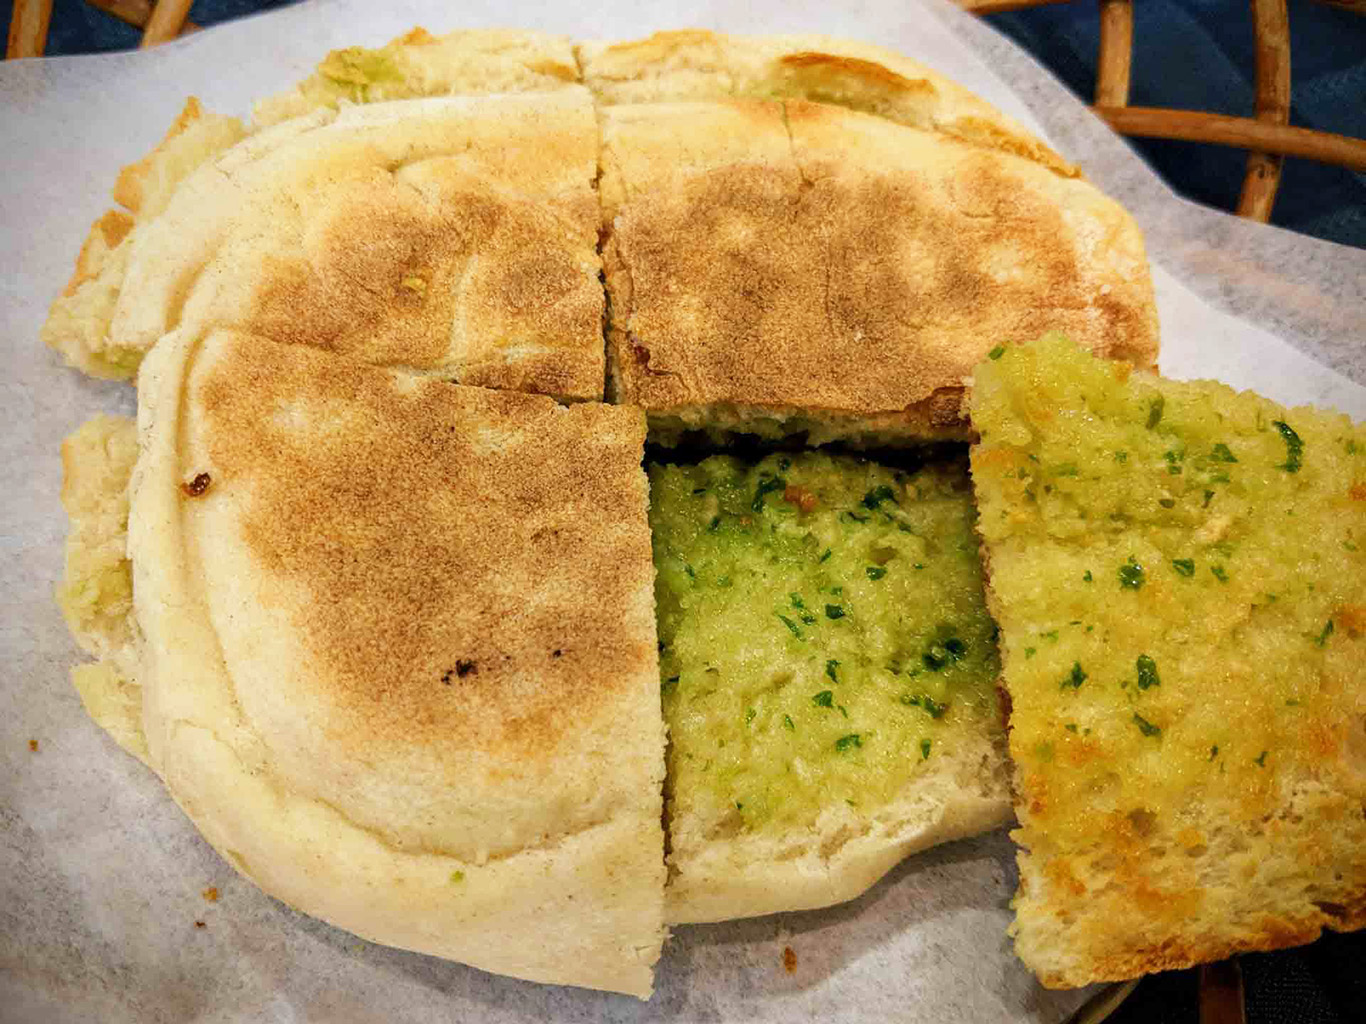 Bolo de caco jsou tradiční madeirské chlebové placky